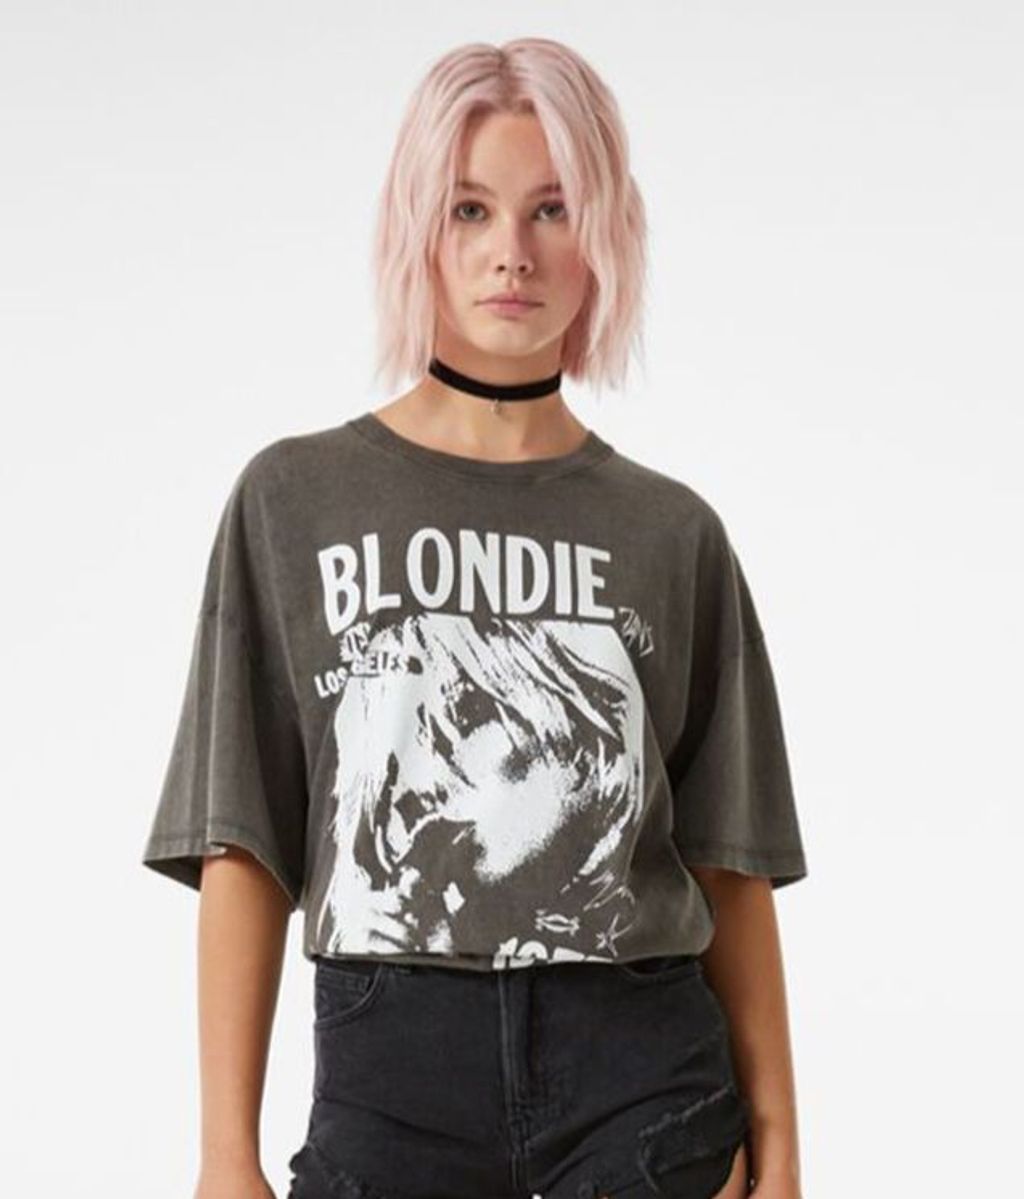 Camiseta de Blondie